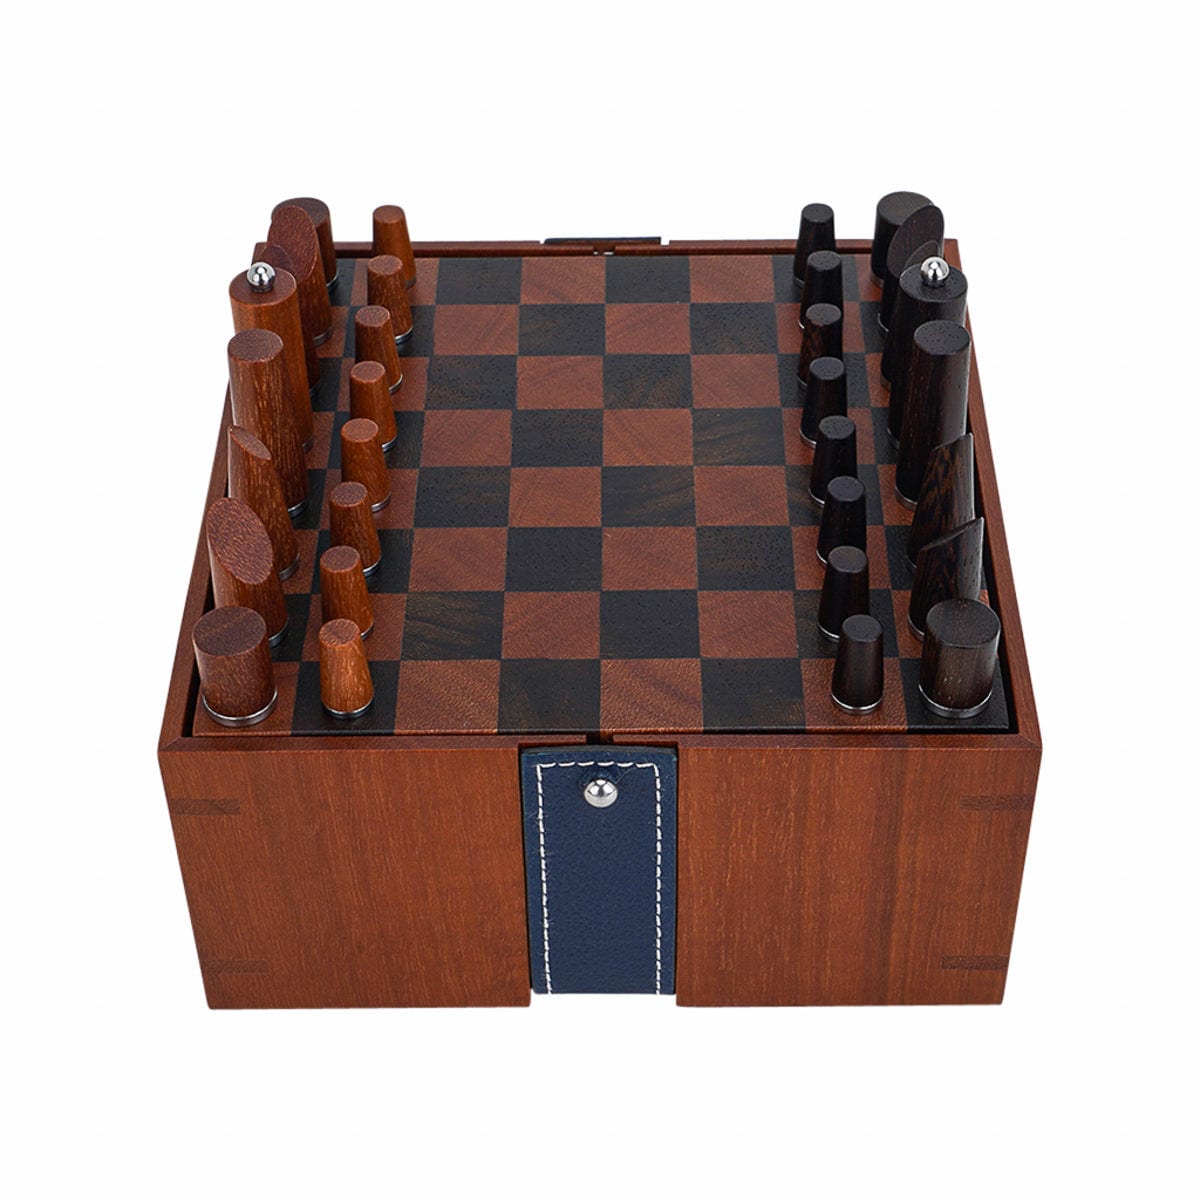 Hermes Samarcande Chess Set